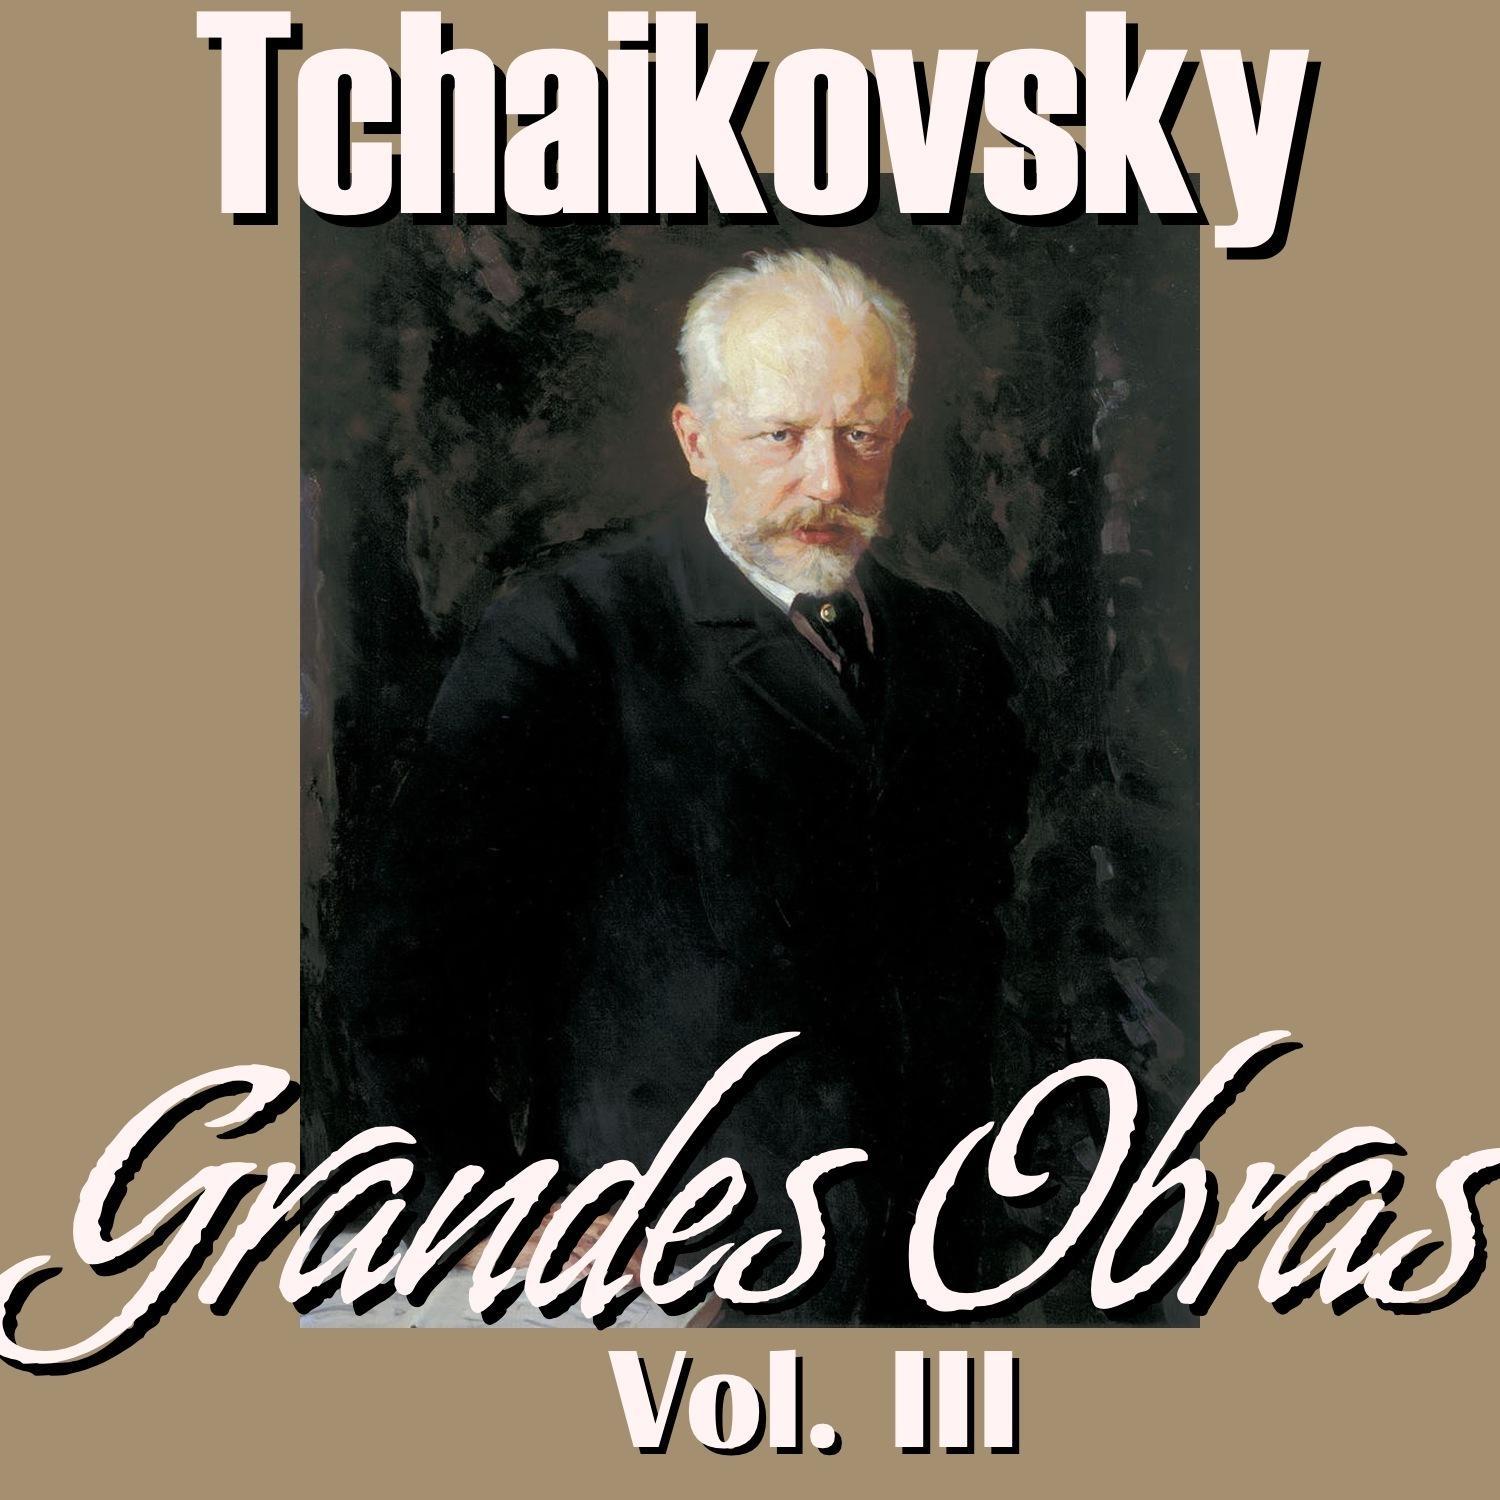 Tchaikovsky Grandes Obras Vol.III